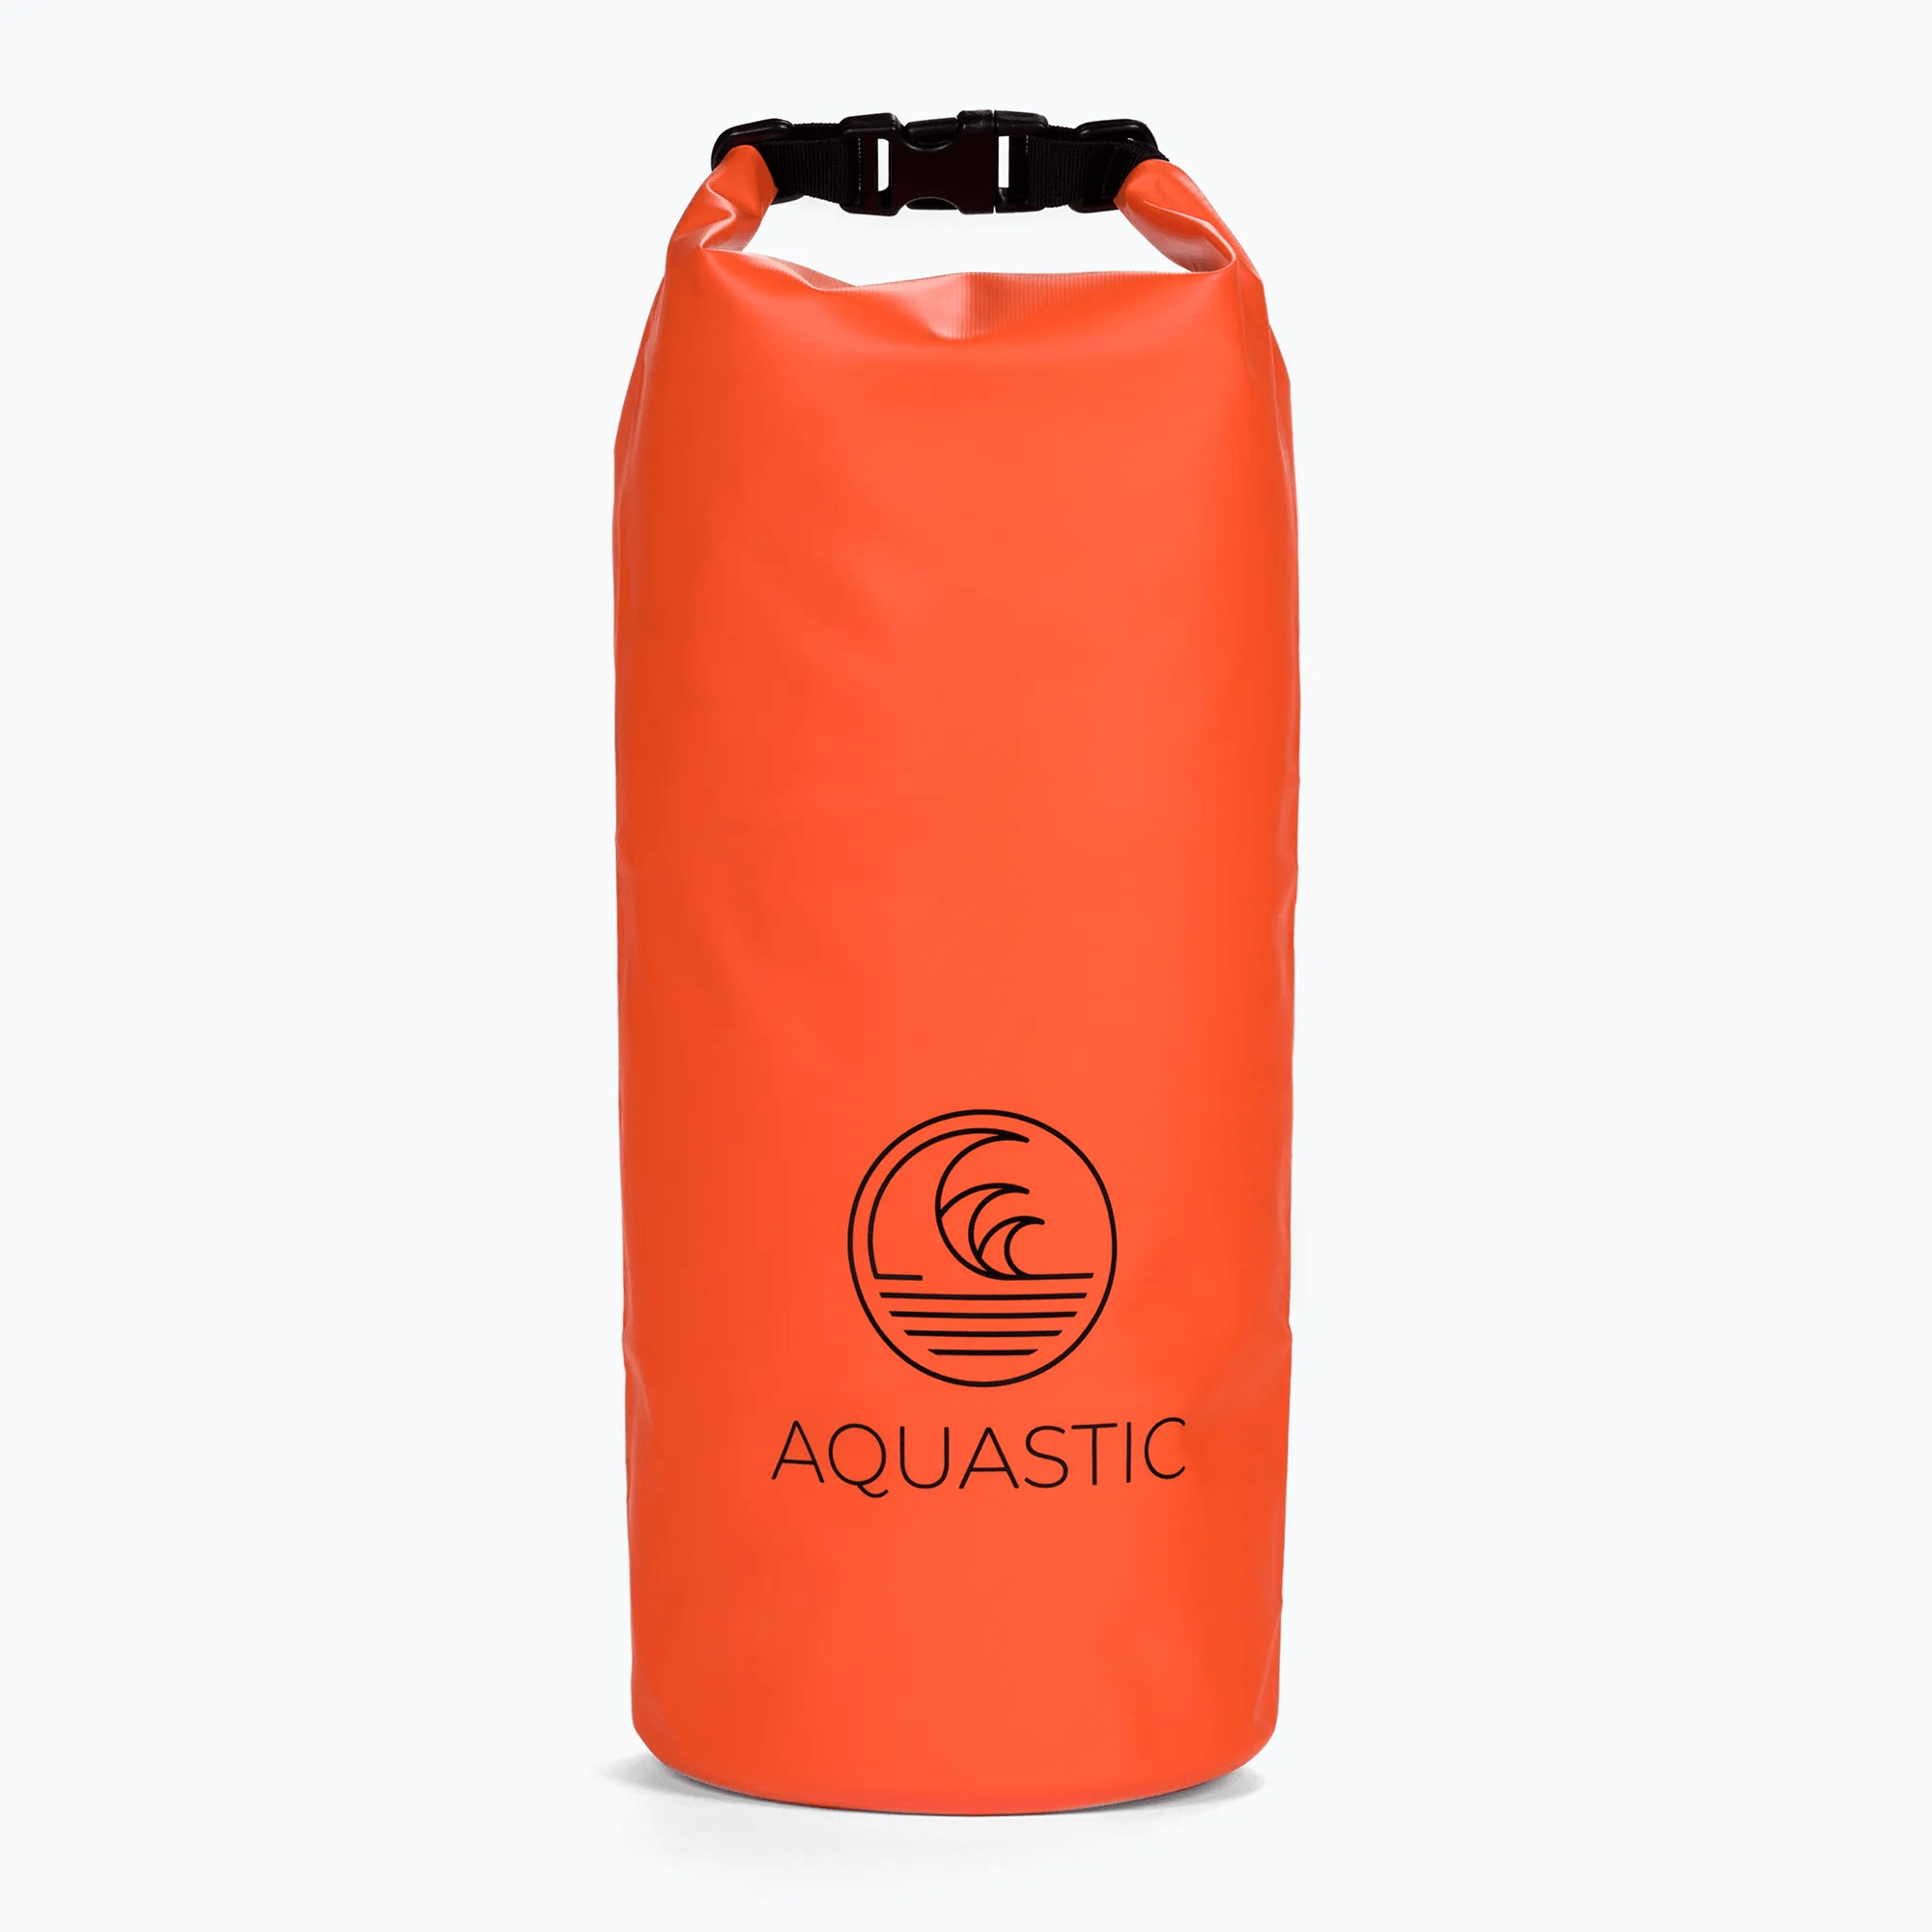 Aquastic: SUP 10 l waterproof bag